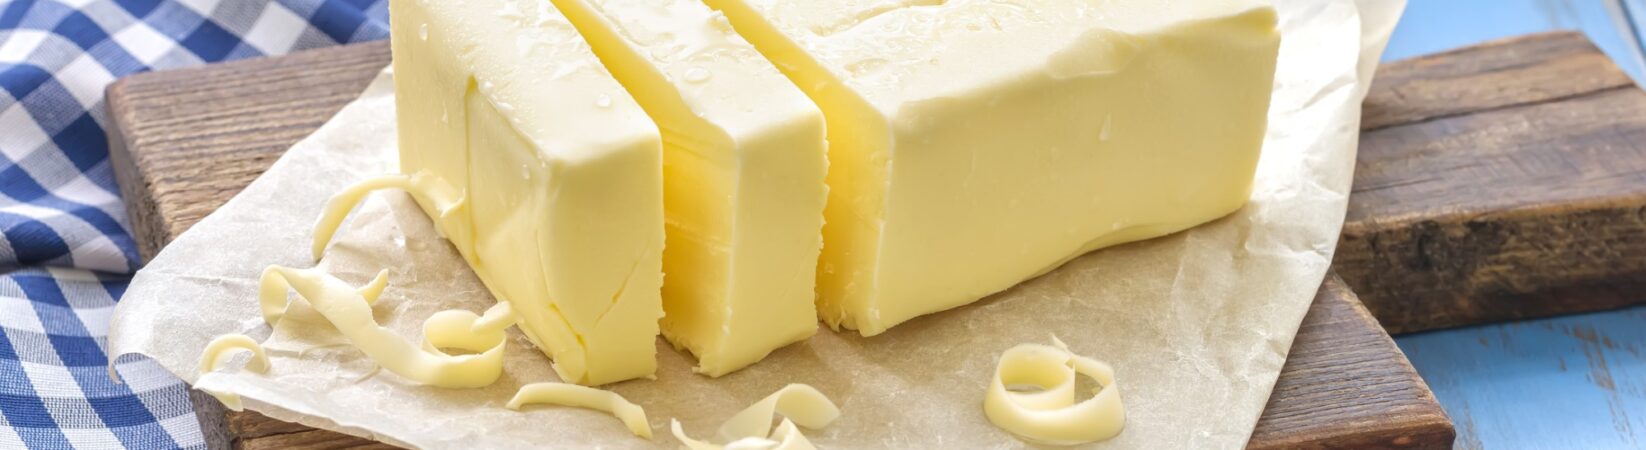 Butter oder Margarine – Was ist gesünder?